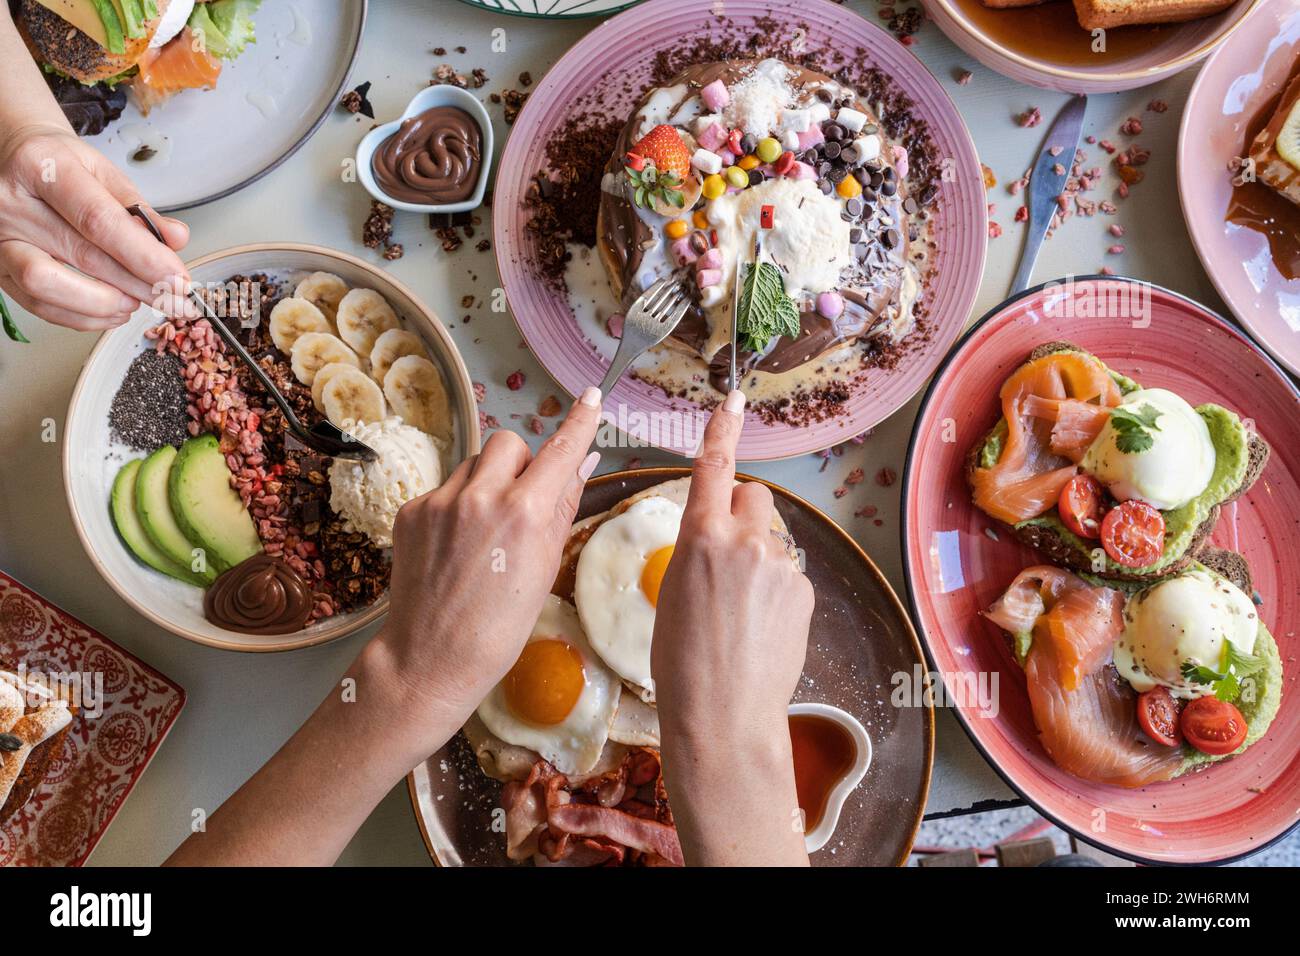 Das Frühstück wird mit verschiedenen Gerichten wie Eiern, Speck, Pfannkuchen und Obst auf einem farbenfrohen Tisch serviert. Stockfoto